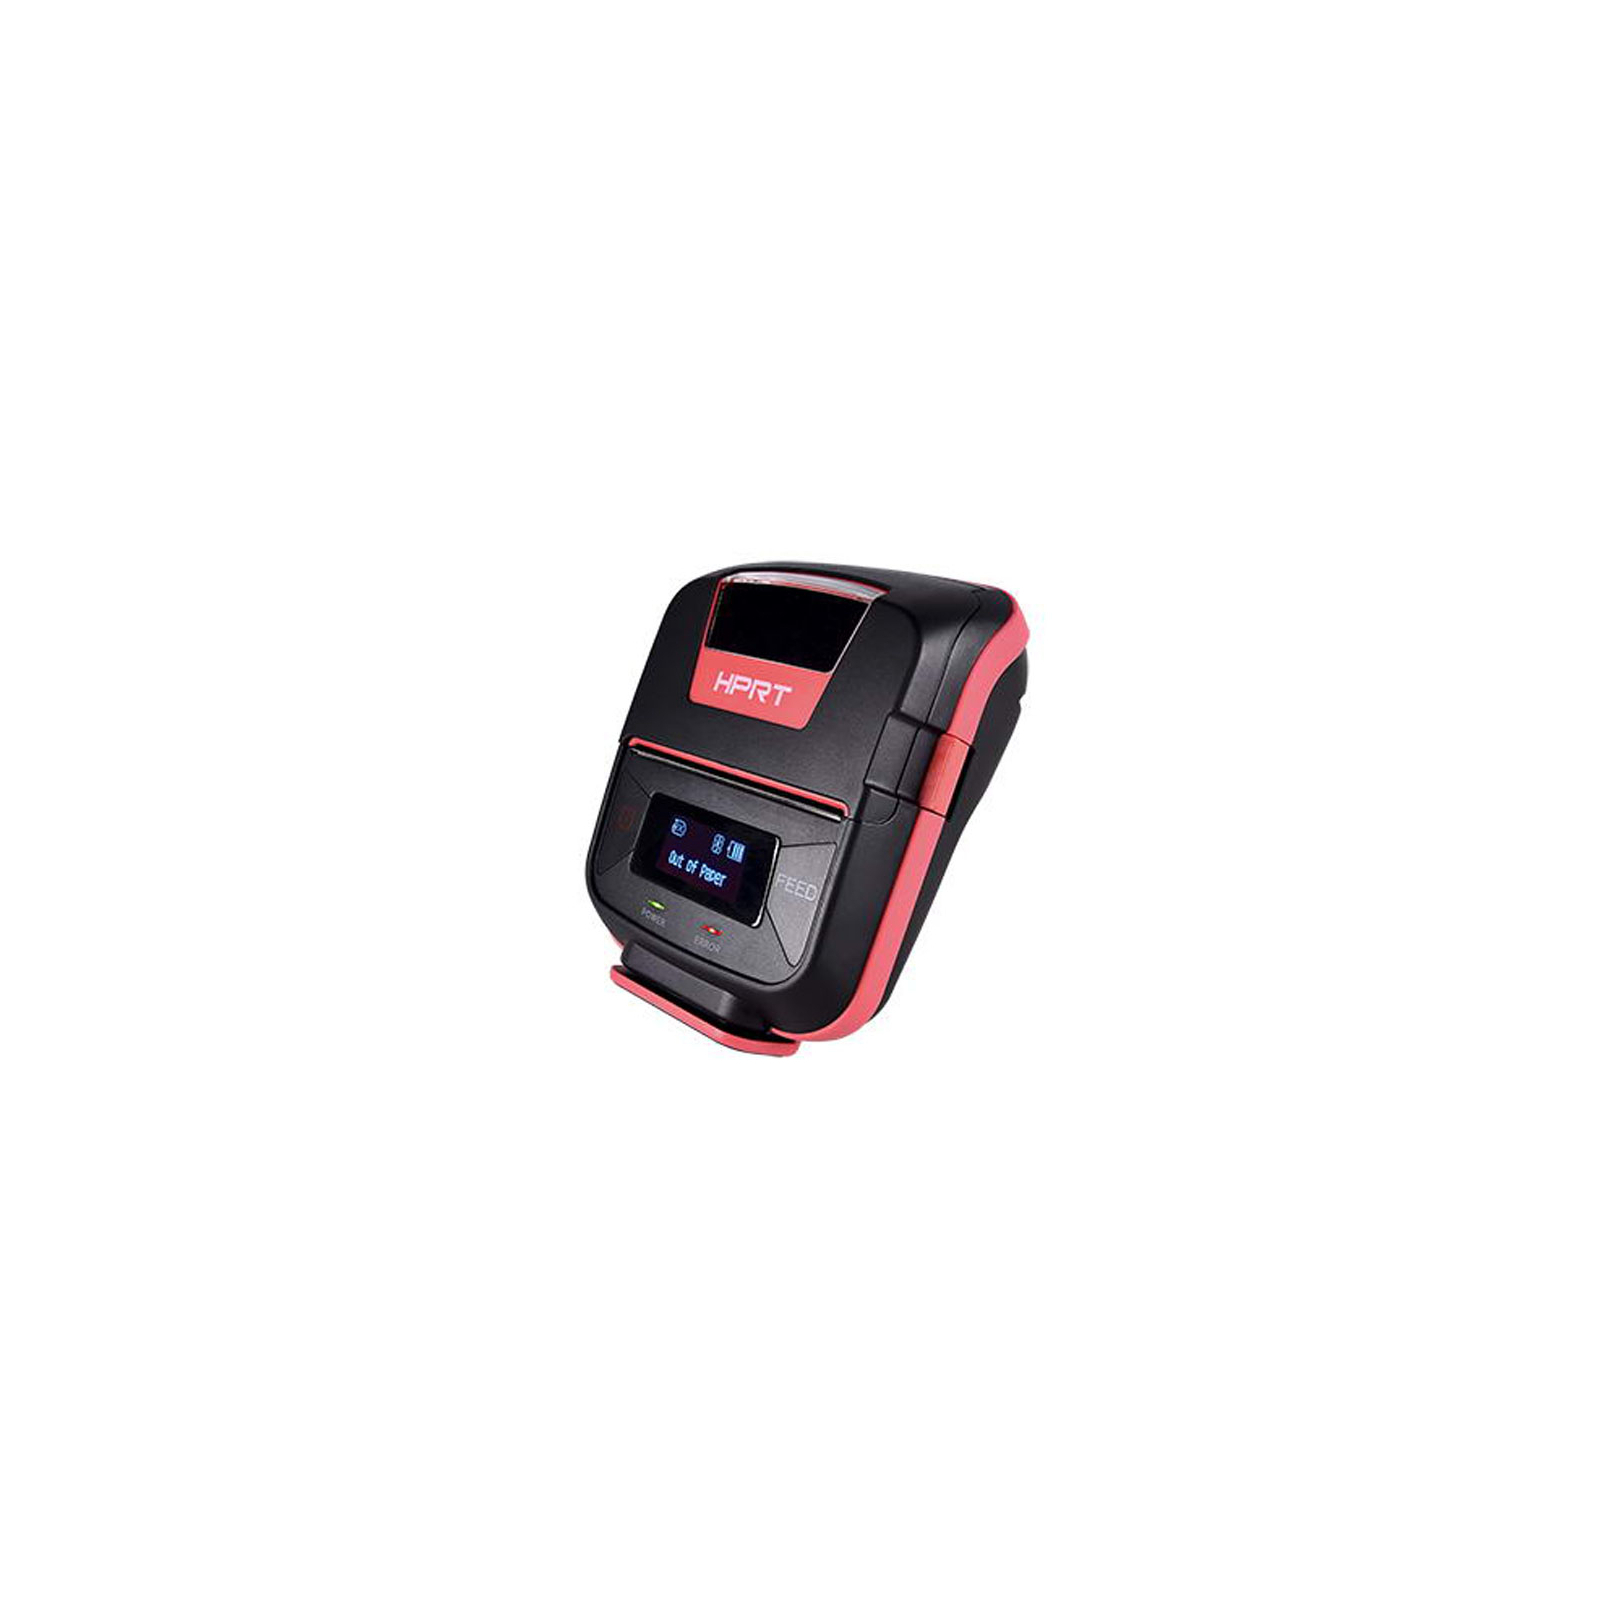 Принтер чеків HPRT HM-E300 мобільний, Bluetooth, USB, червоний+чорний (14656) зображення 2